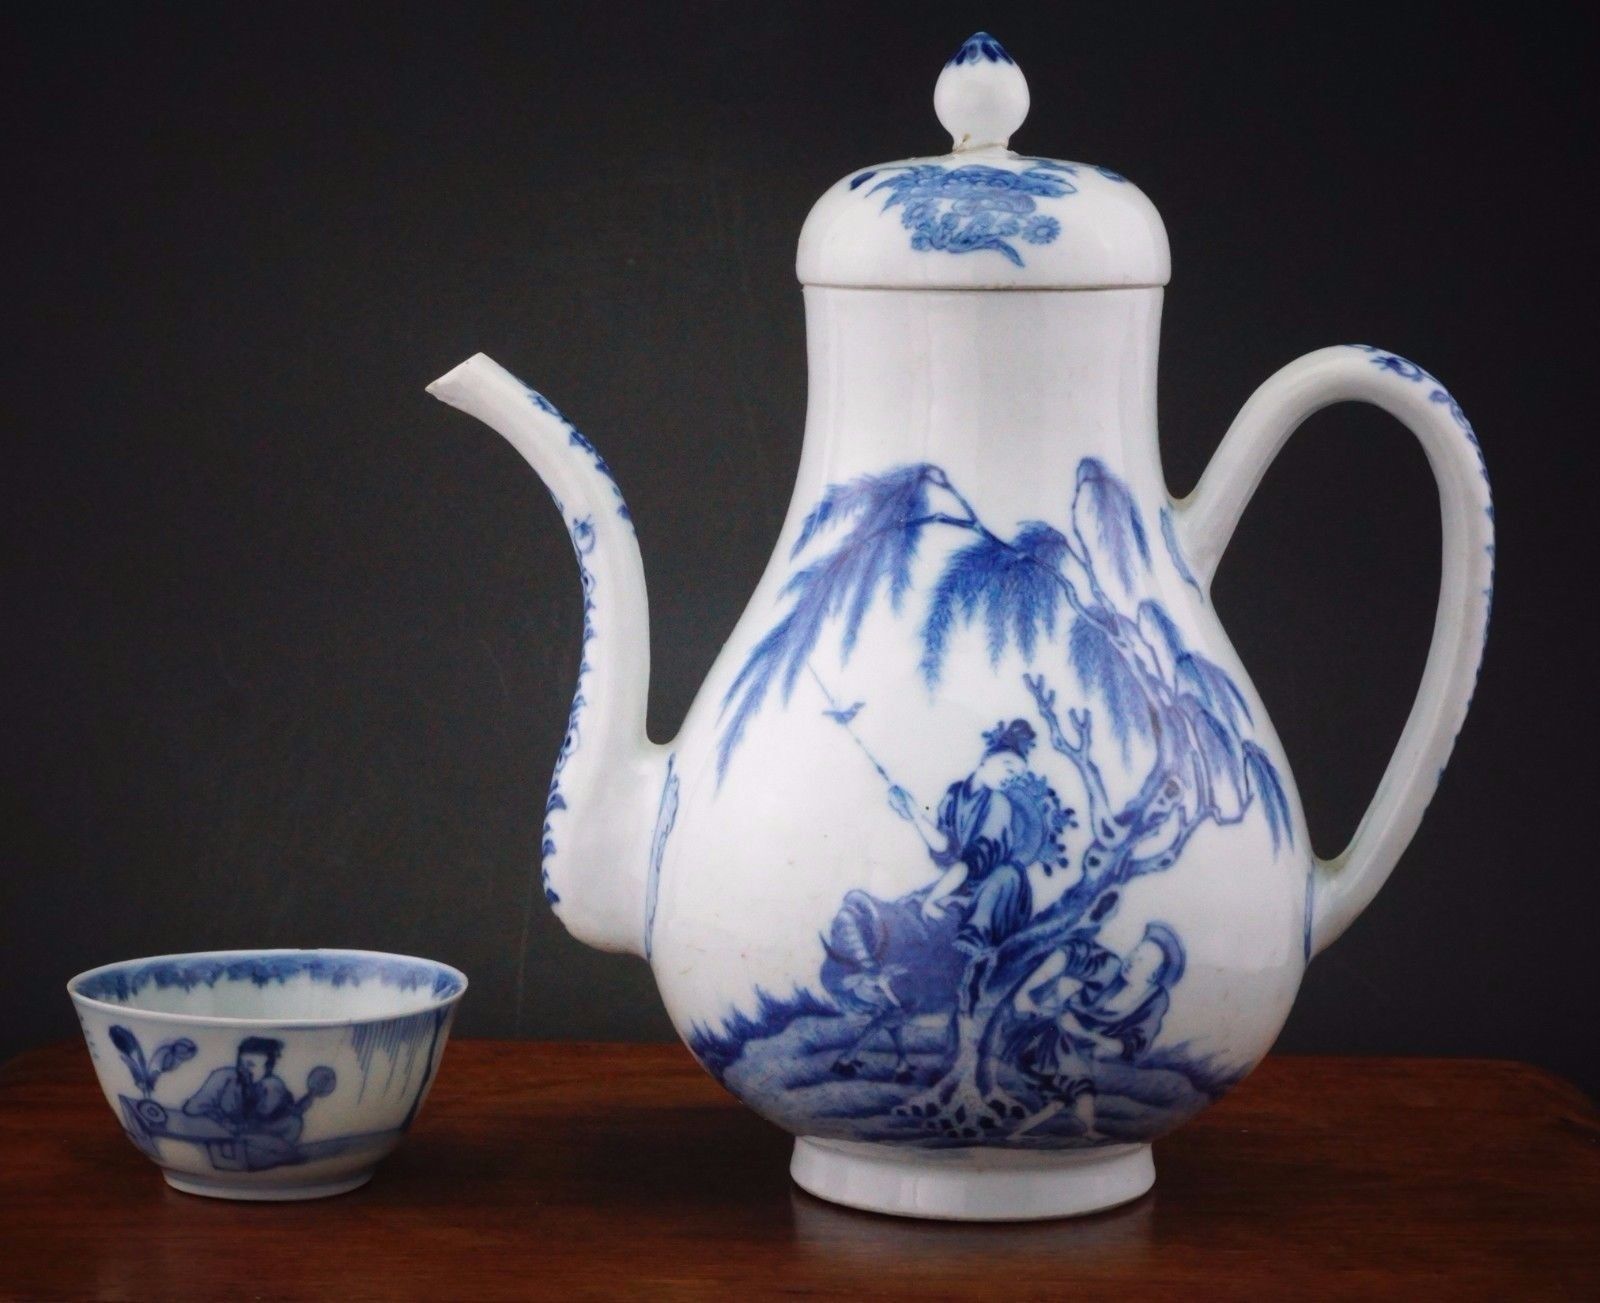 Antiquités : Top 5 des théières chinoises parmi les plus chères vendues aux enchères ! 